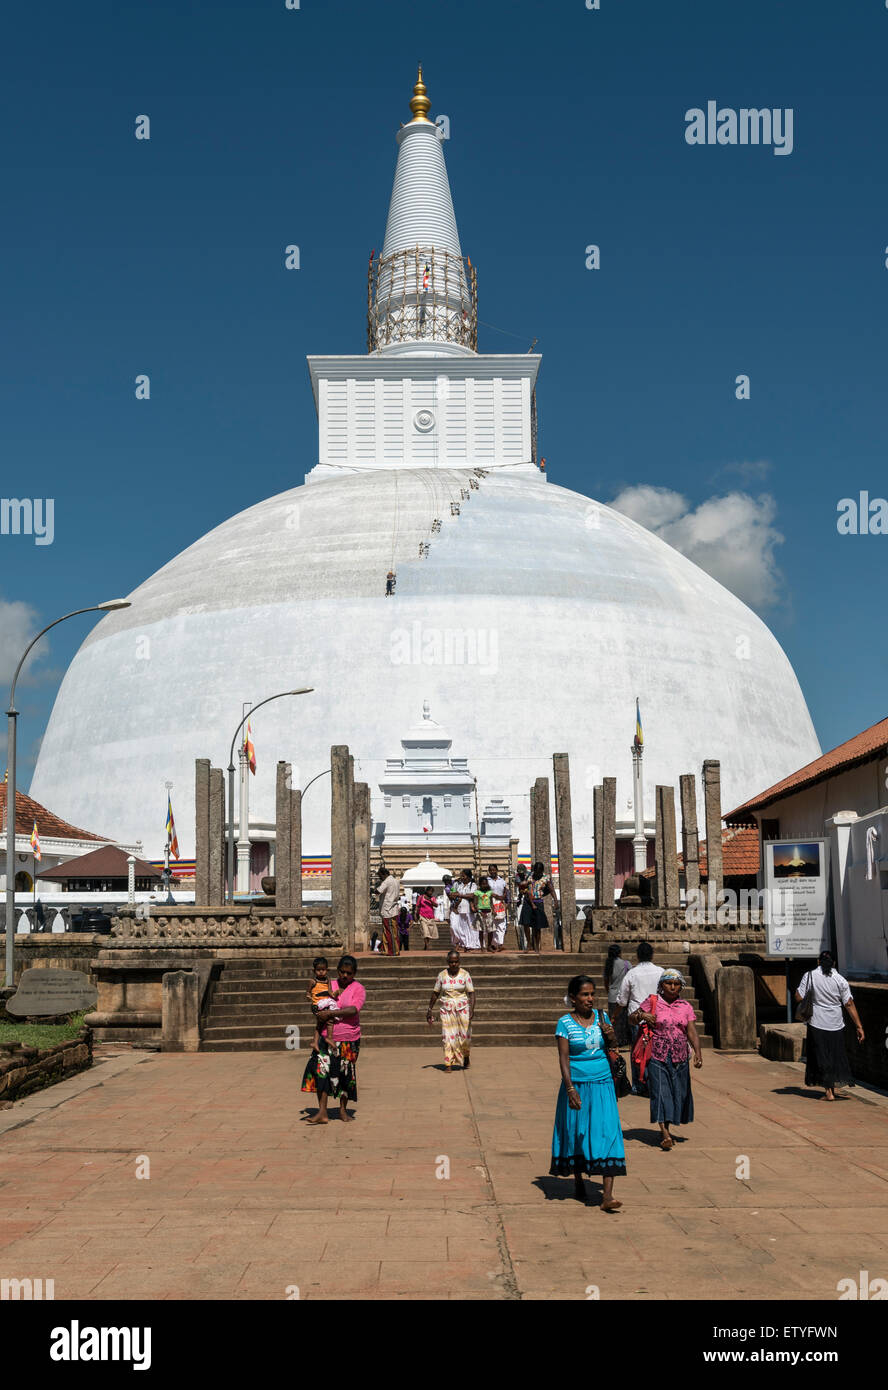 Visitors at Ruwanwelisaya (Ruwanweli Maha Seya) Stupa, Anuradhapura, Sri Lanka Stock Photo